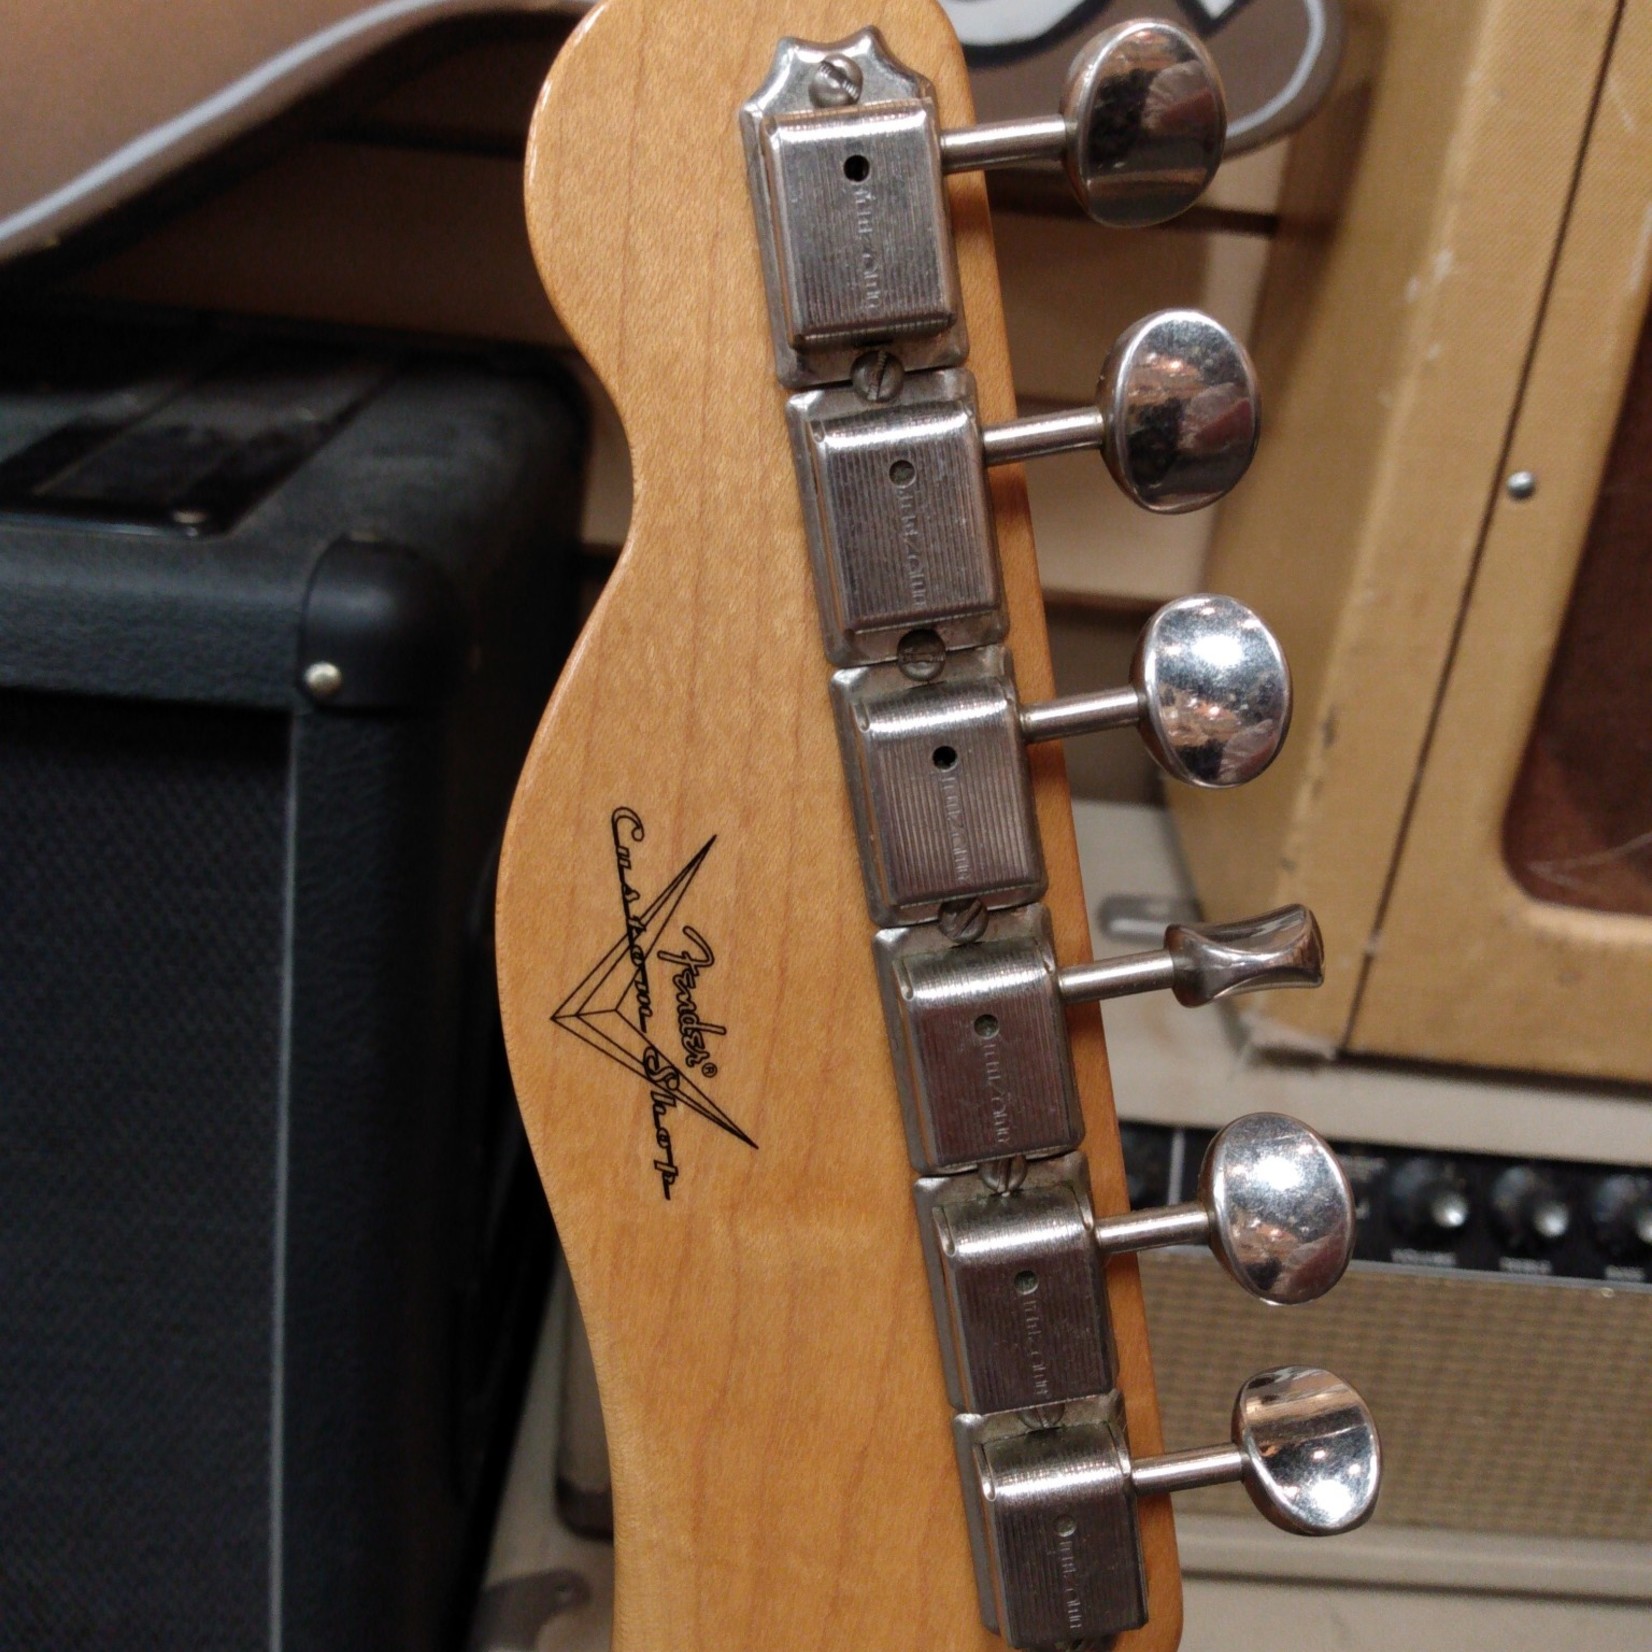 Fender Fender Custom Shop '52 Telecaster Reissue BSB